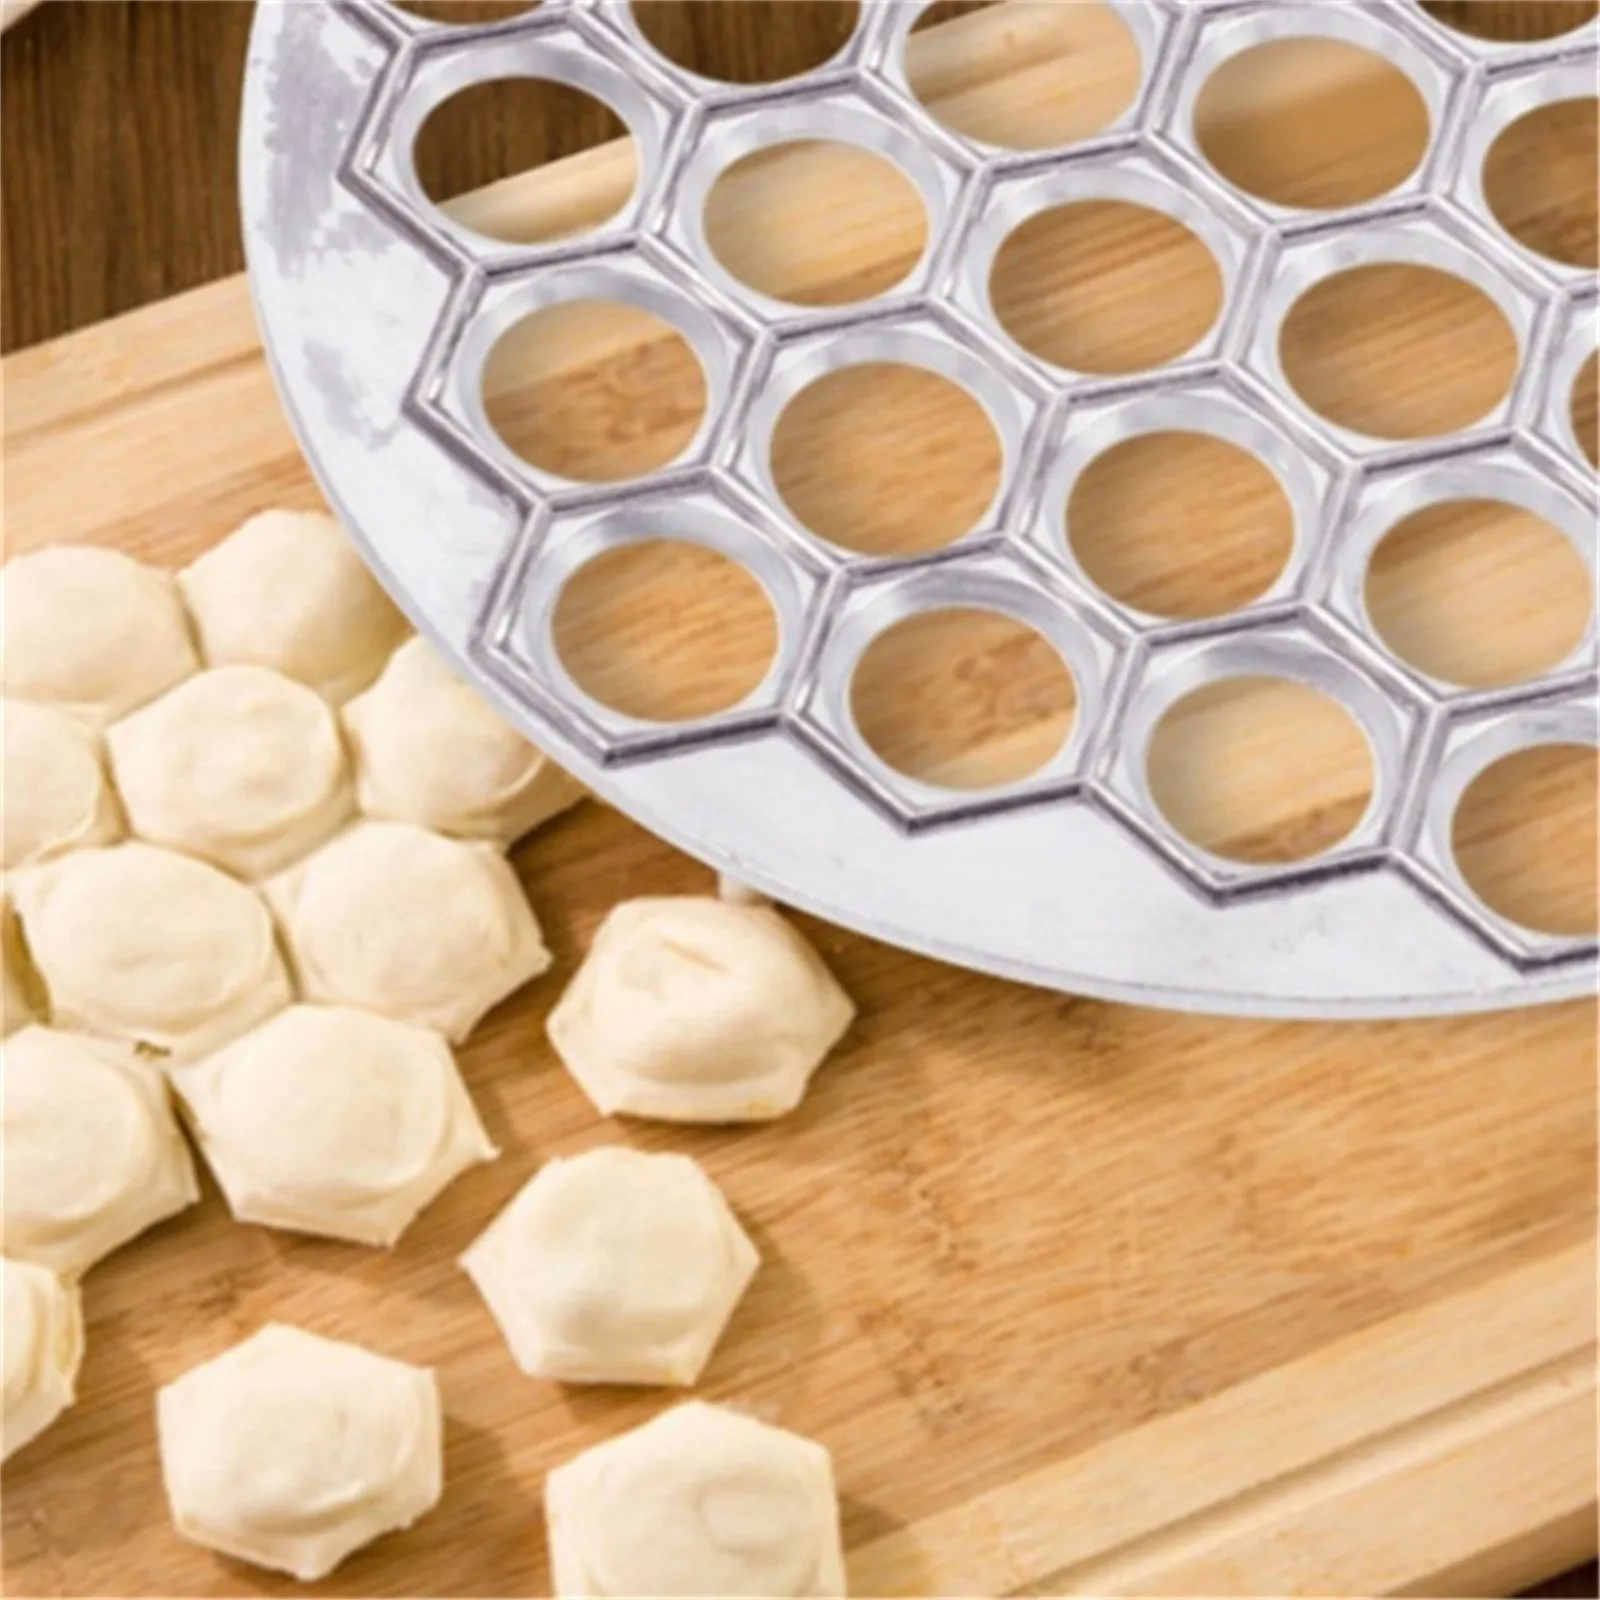 Russian Pelmeni Pelmeny Ravioli Dumpling Maker Form Mold Press Cutter Plastic 